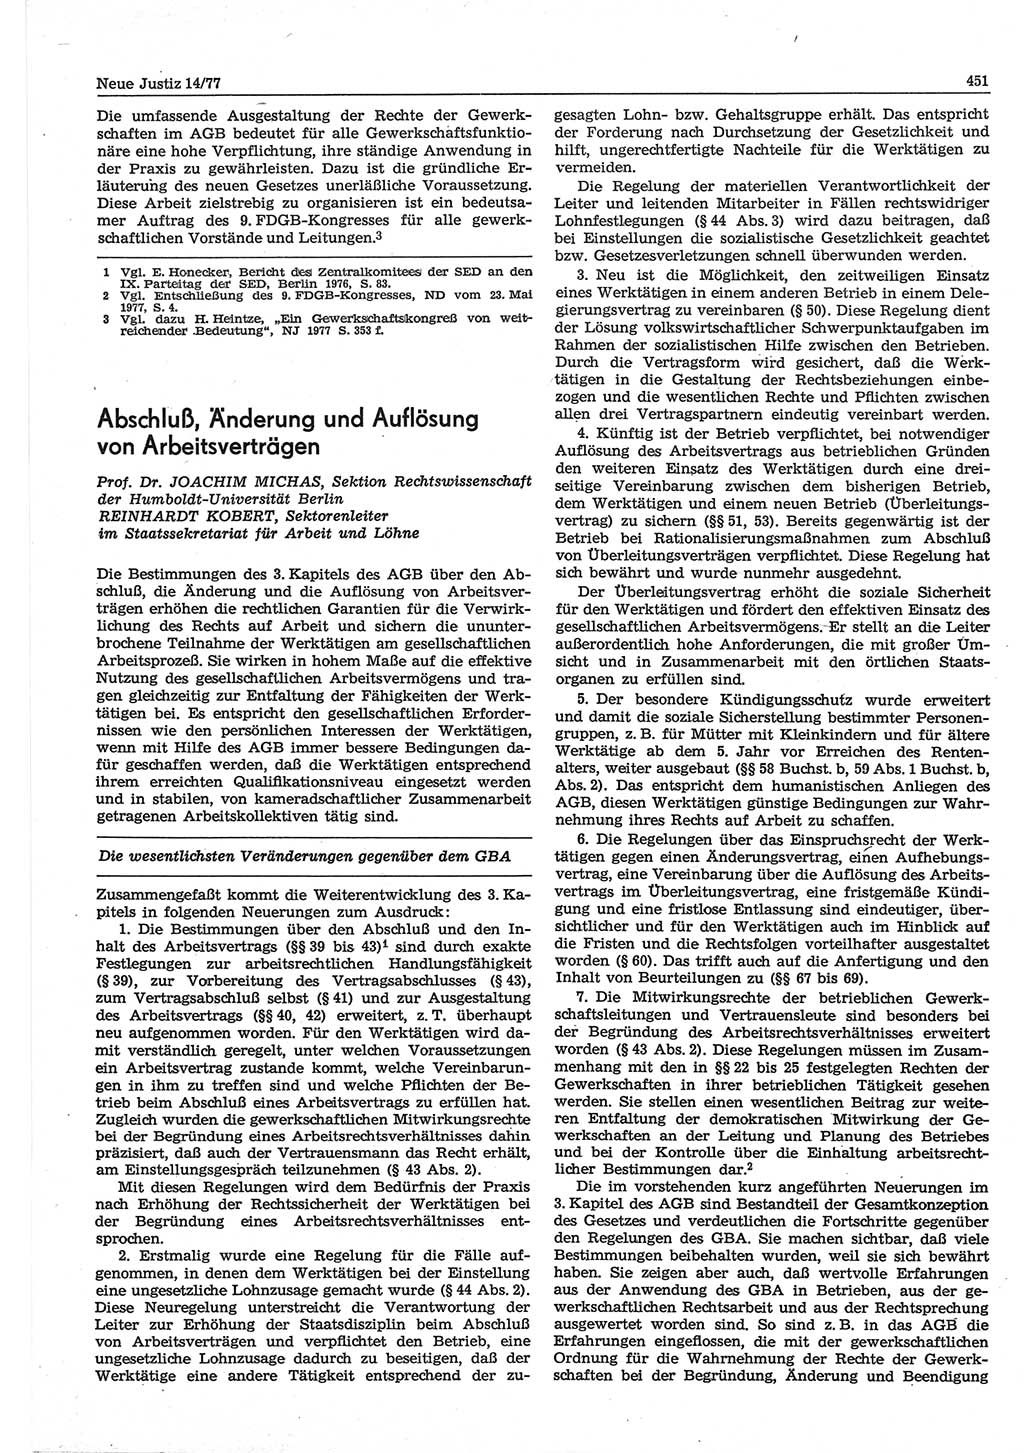 Neue Justiz (NJ), Zeitschrift für Recht und Rechtswissenschaft-Zeitschrift, sozialistisches Recht und Gesetzlichkeit, 31. Jahrgang 1977, Seite 451 (NJ DDR 1977, S. 451)